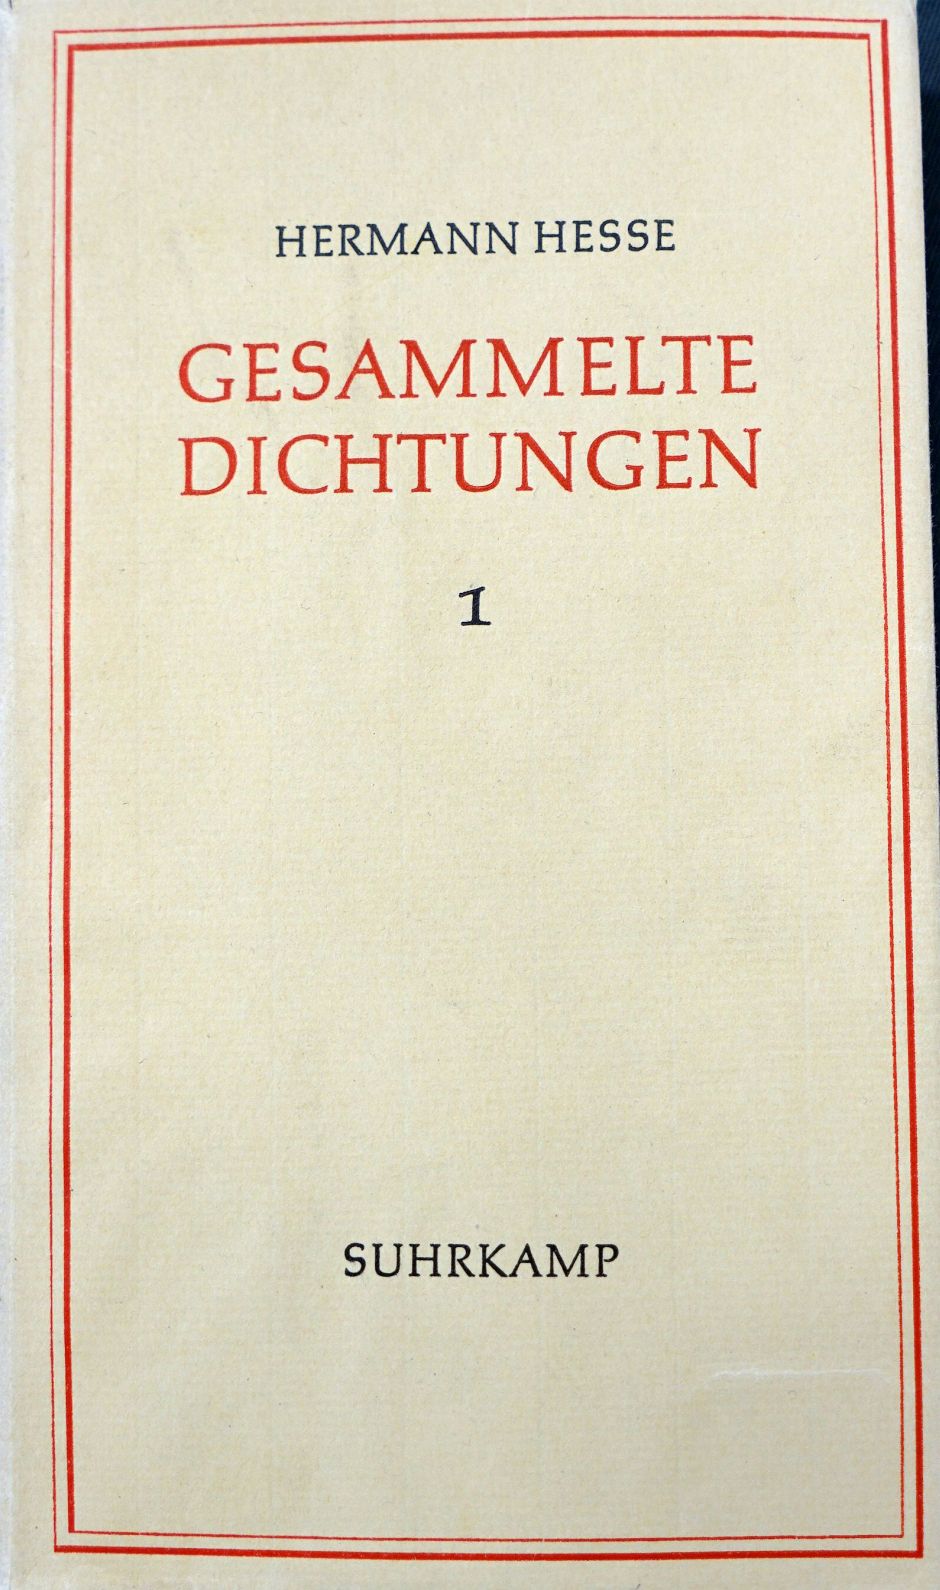 Lot 3149, Auction  115, Hesse, Hermann, Gesammelte Dichtungen